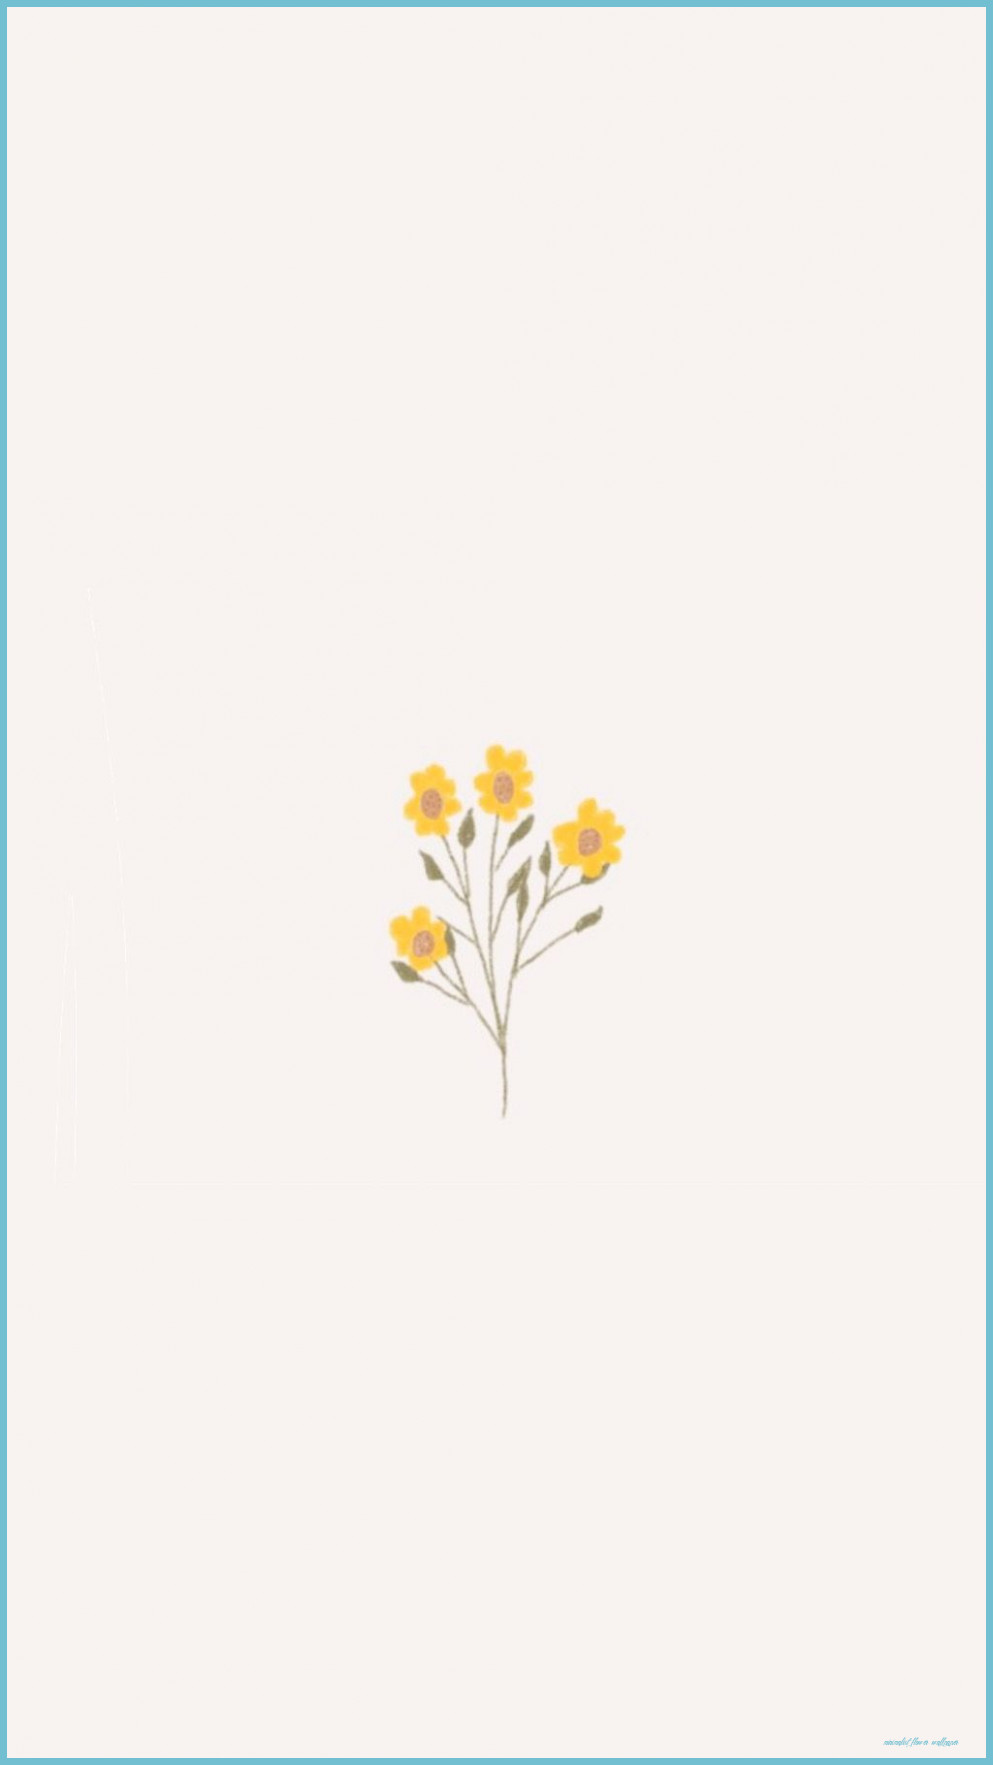 Pin By Alisa On Pinky Beige ⋒ Minimalist Wallpaper, Cute Simple Flower Wallpaper